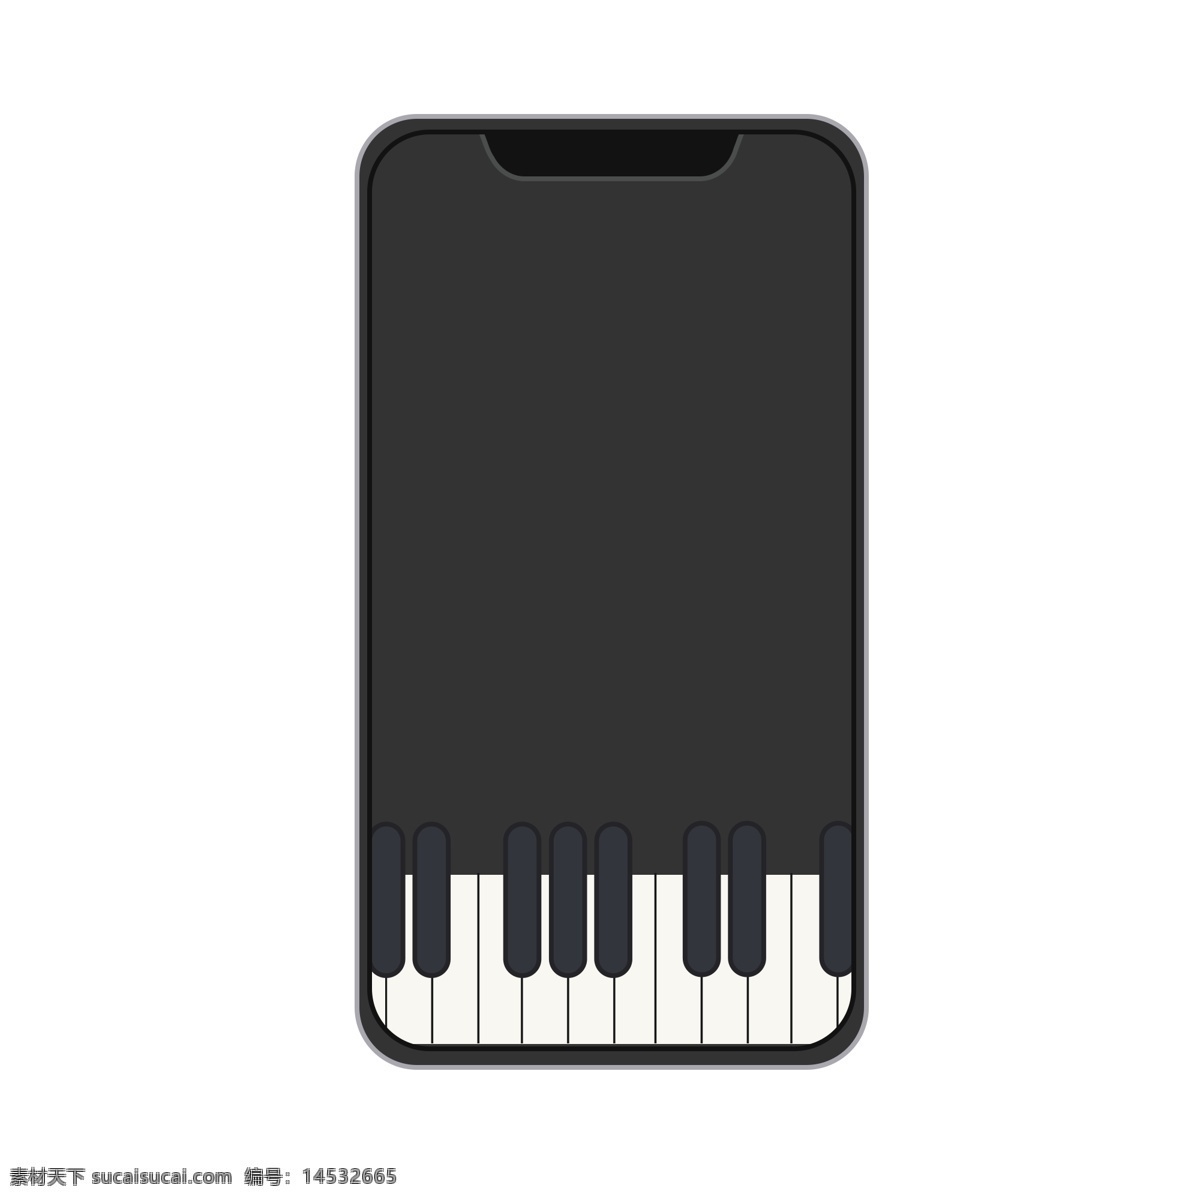 黑色 手机 钢琴 插画 手机钢琴 创意手机钢琴 黑色钢琴 黑色手机 手机插画 手机钢琴插画 弹手机钢琴